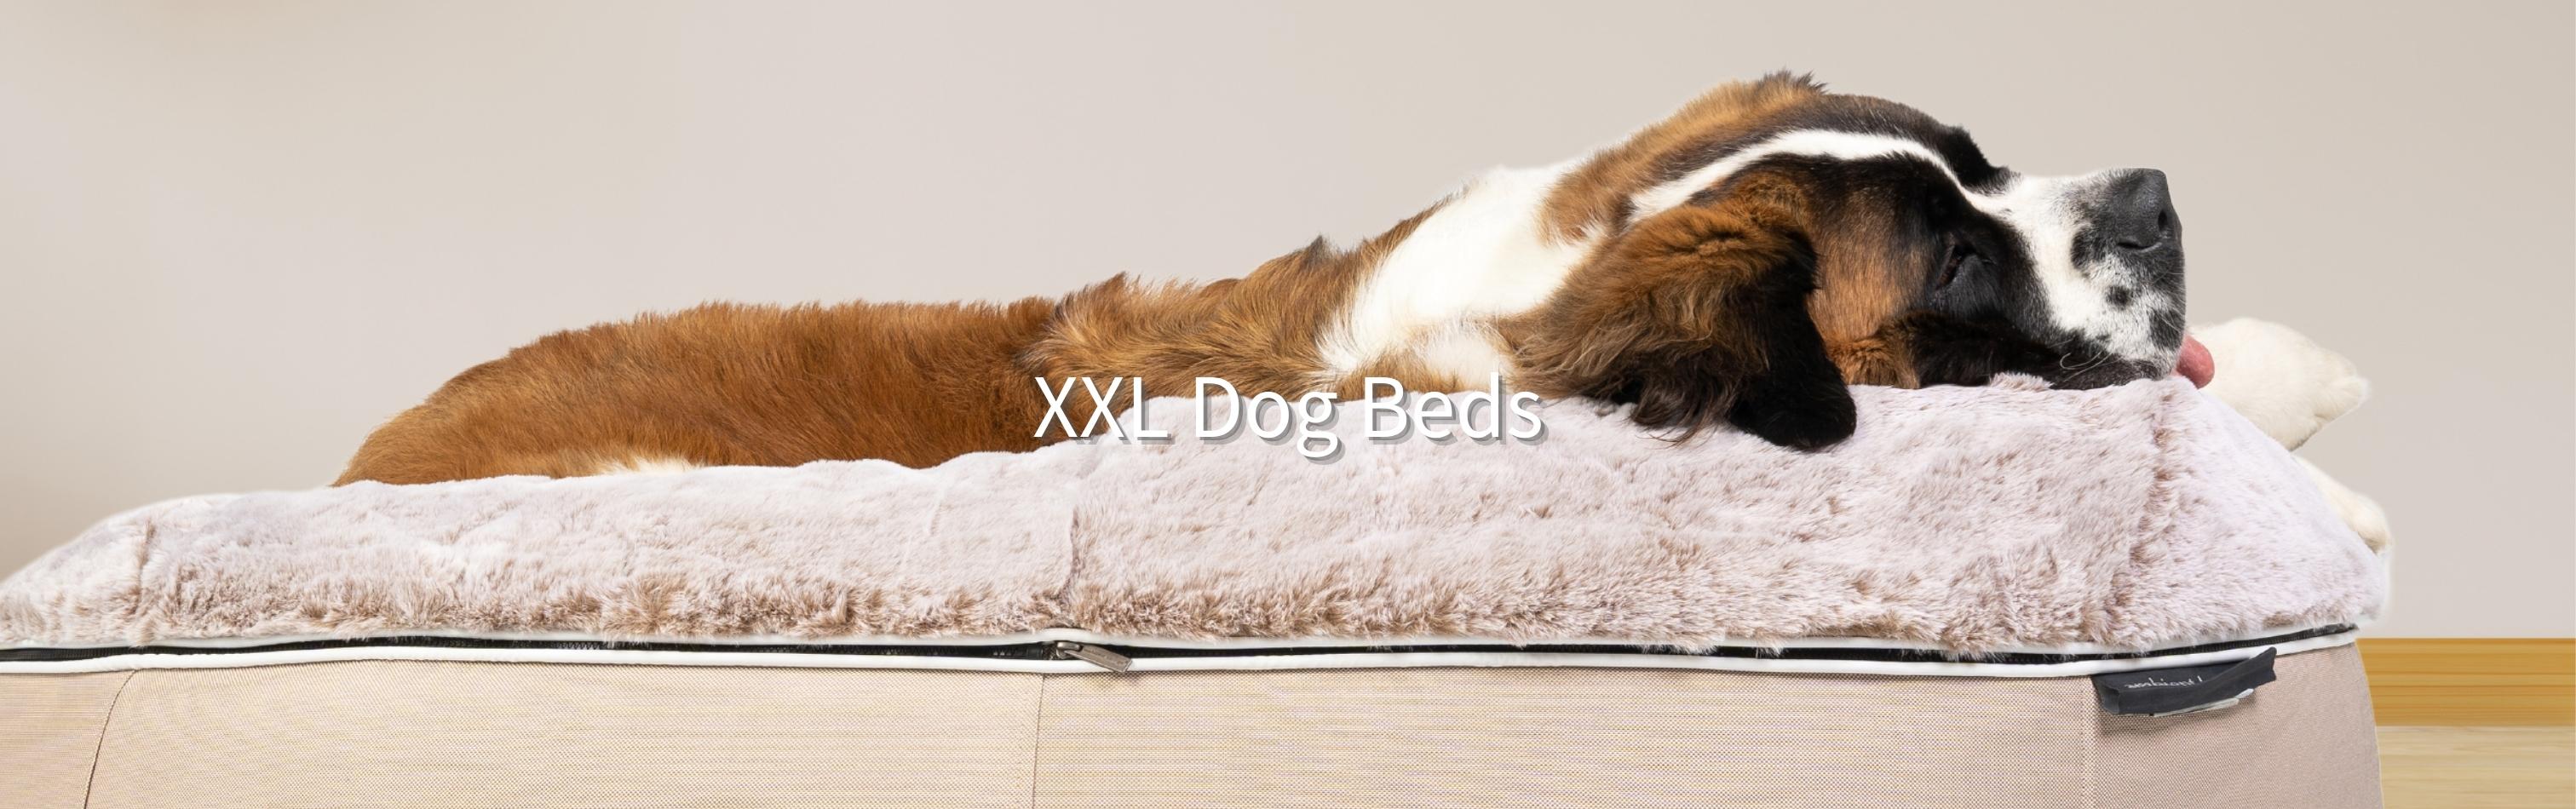 XXL Dog Beds